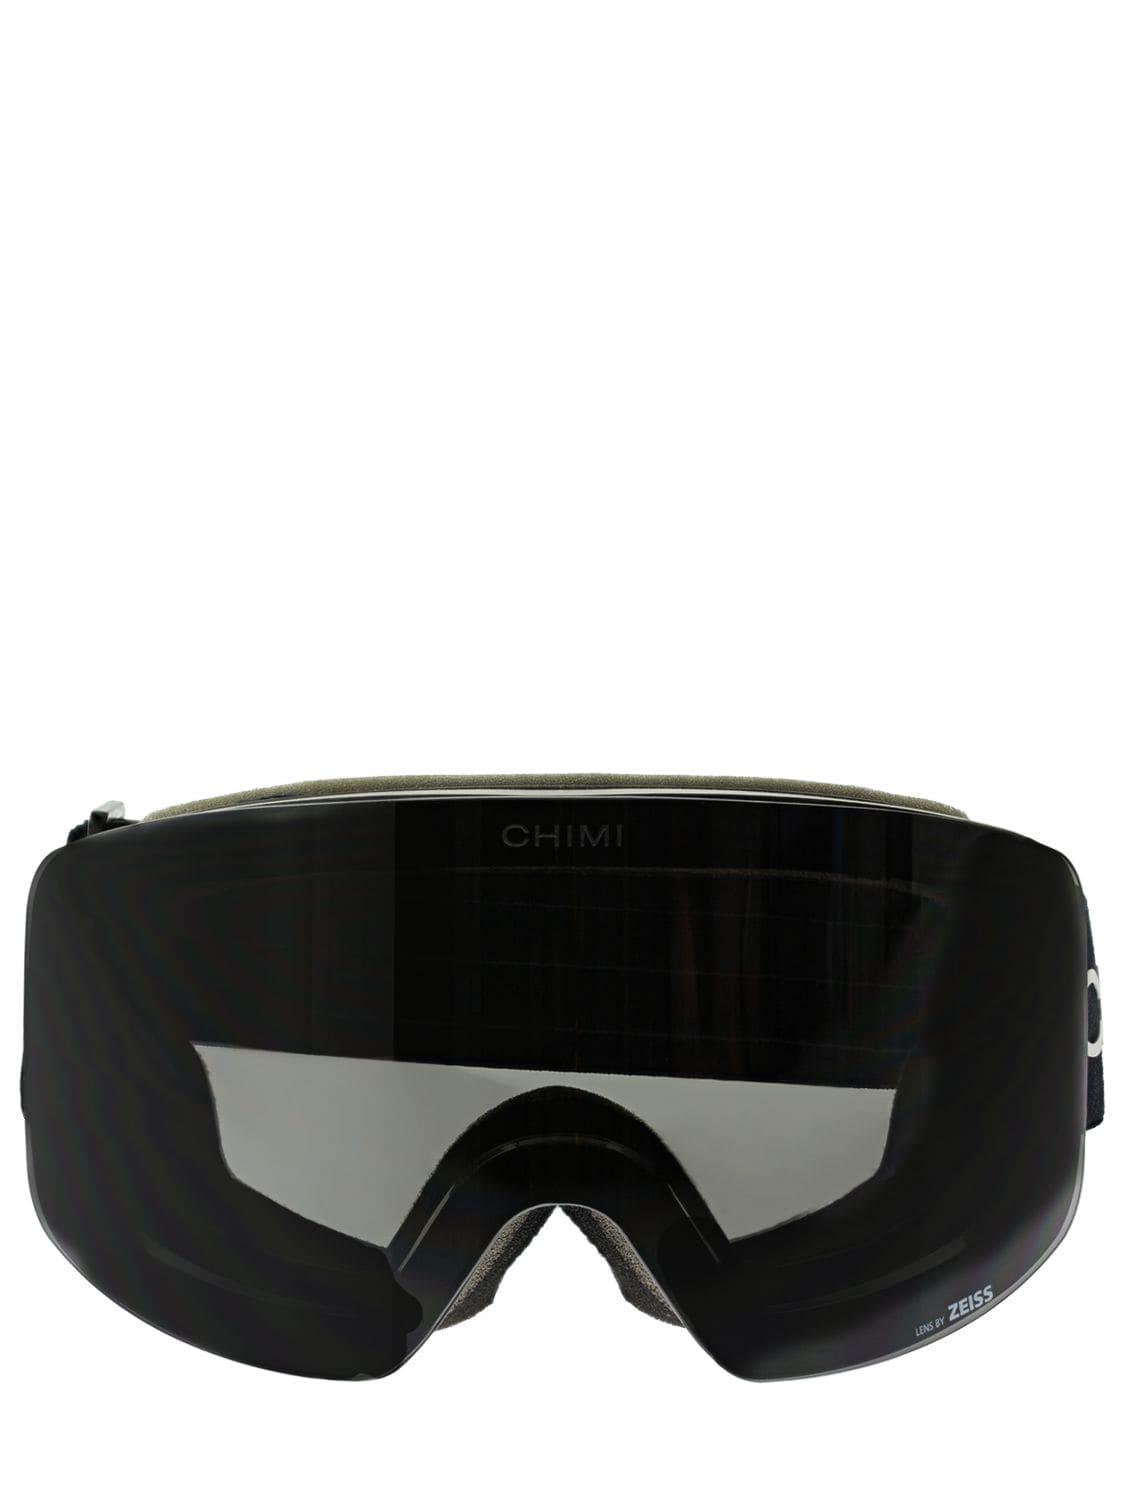 Chimi Ski Goggles in Black | Lyst